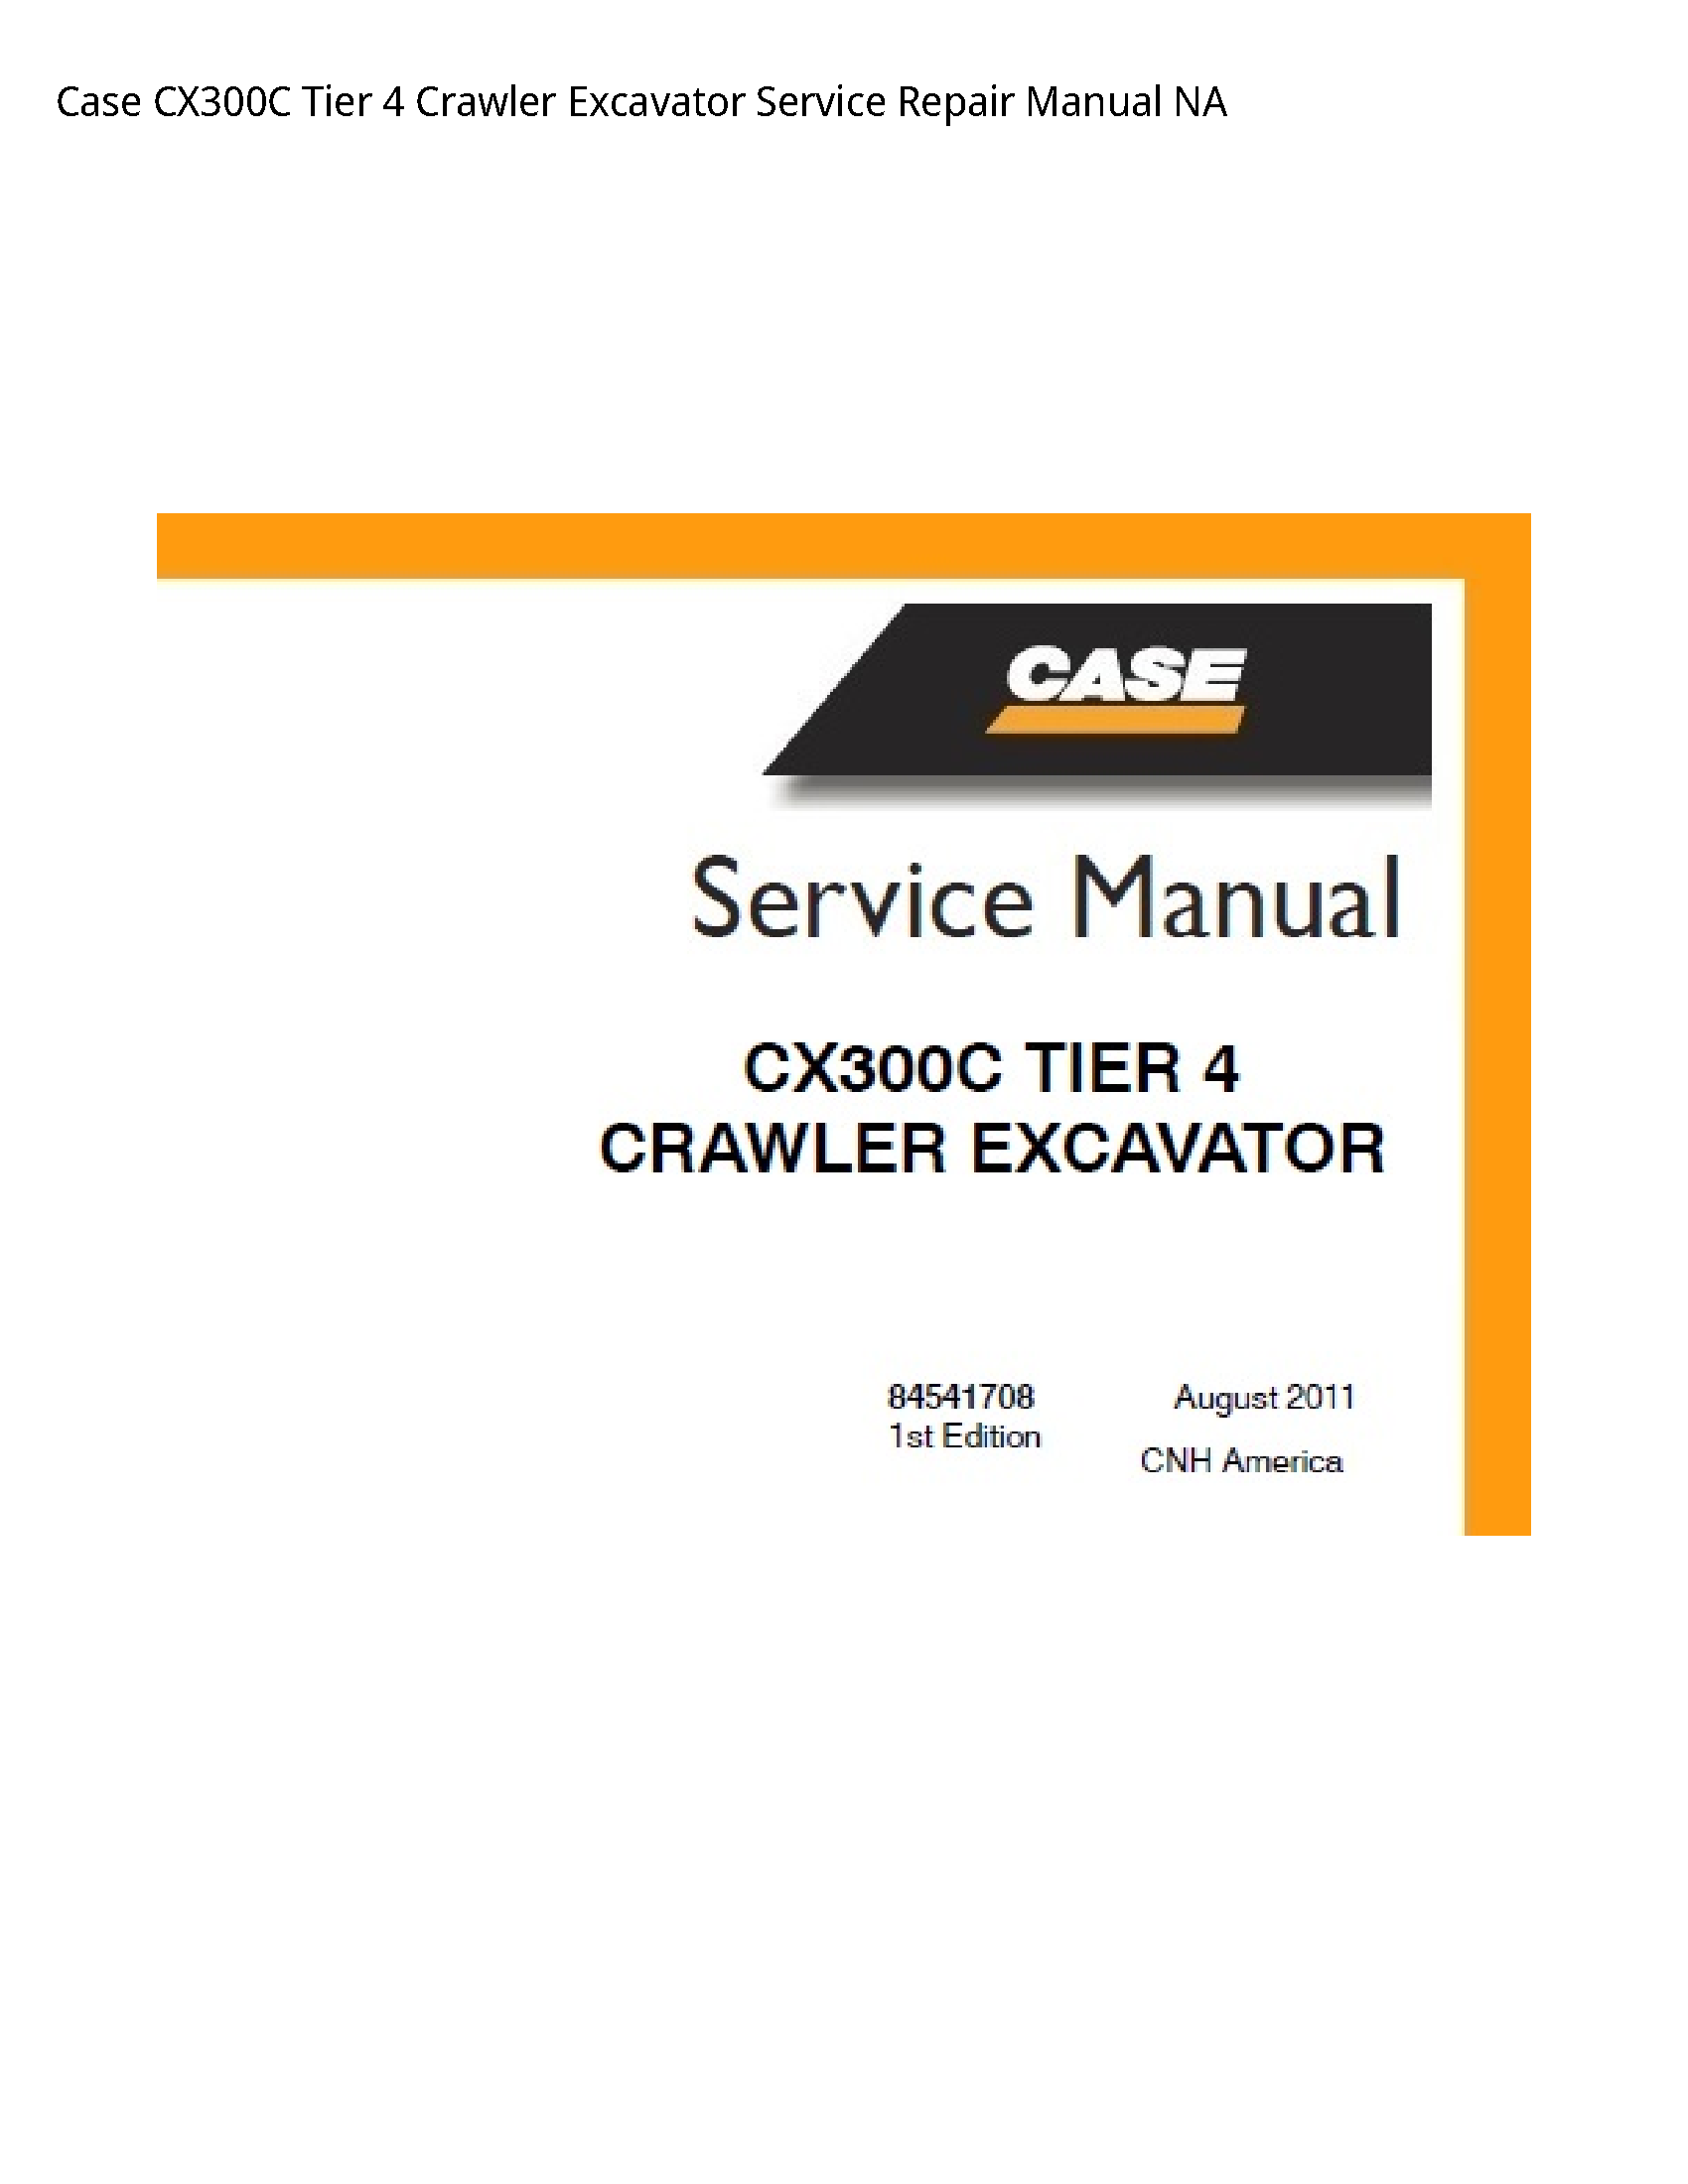 Case/Case IH CX300C Tier Crawler Excavator manual